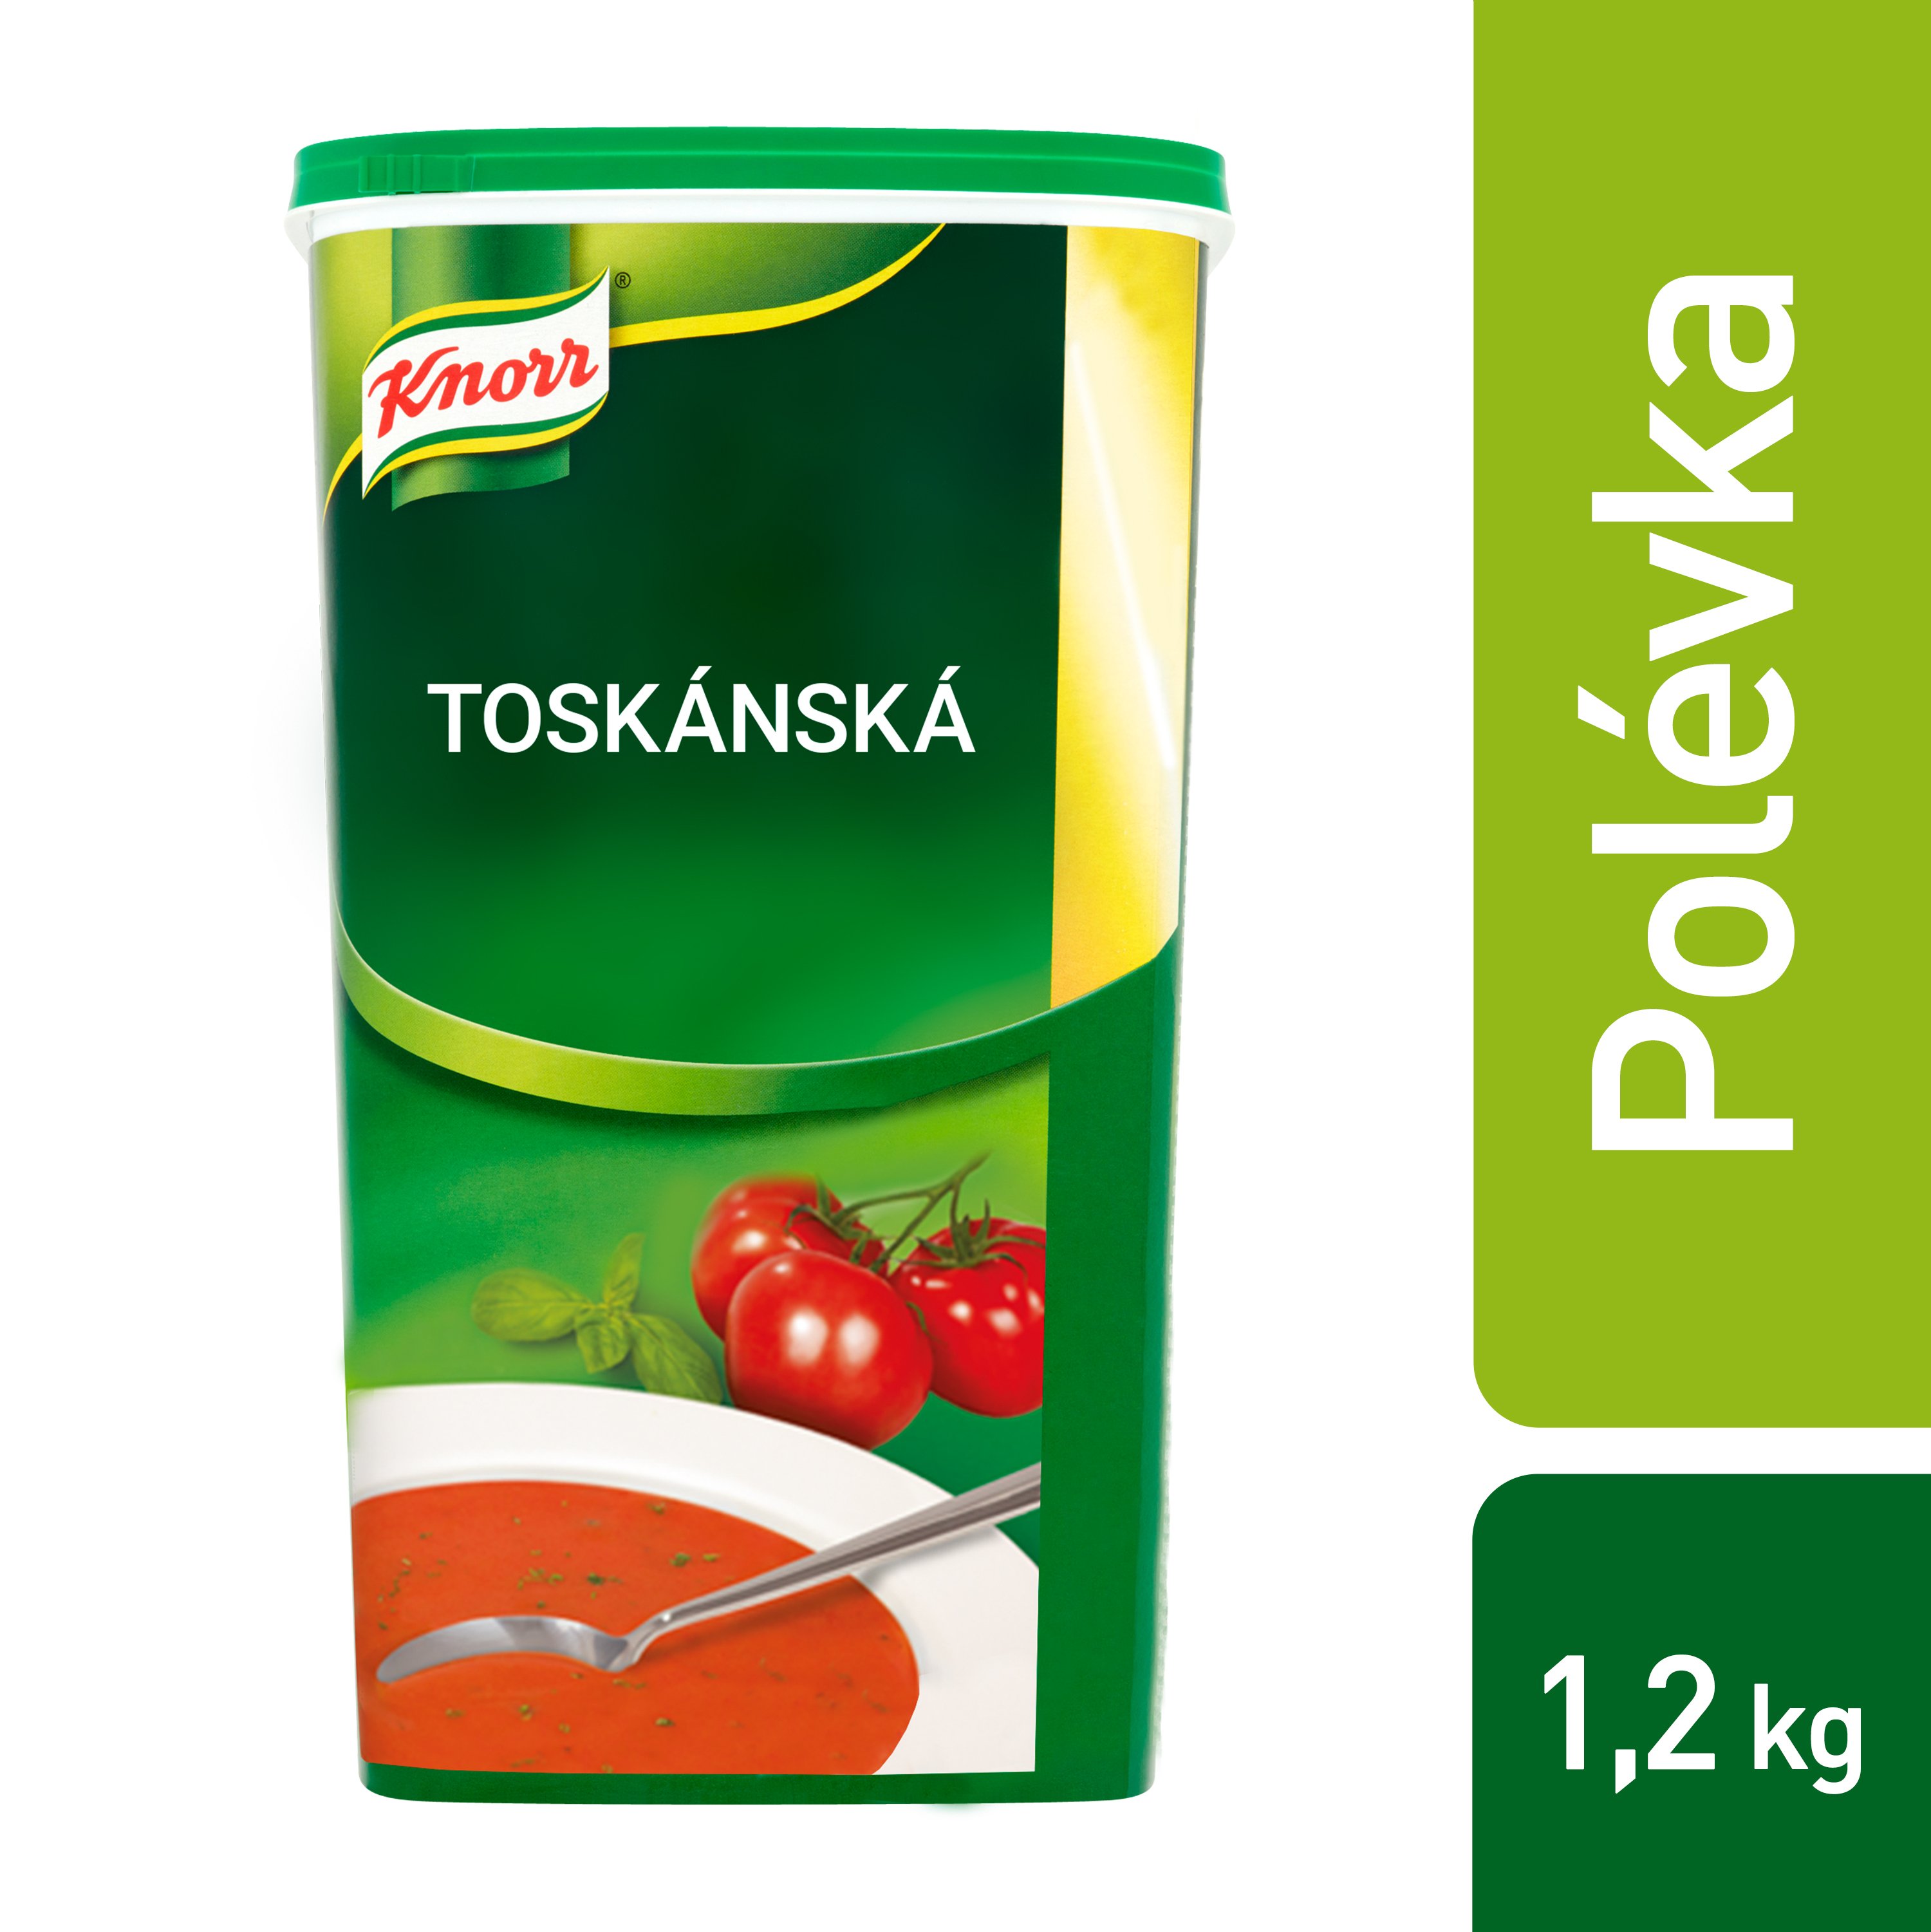 Knorr Toskánská tomatová polévka s bylinkami 1,2 kg - 